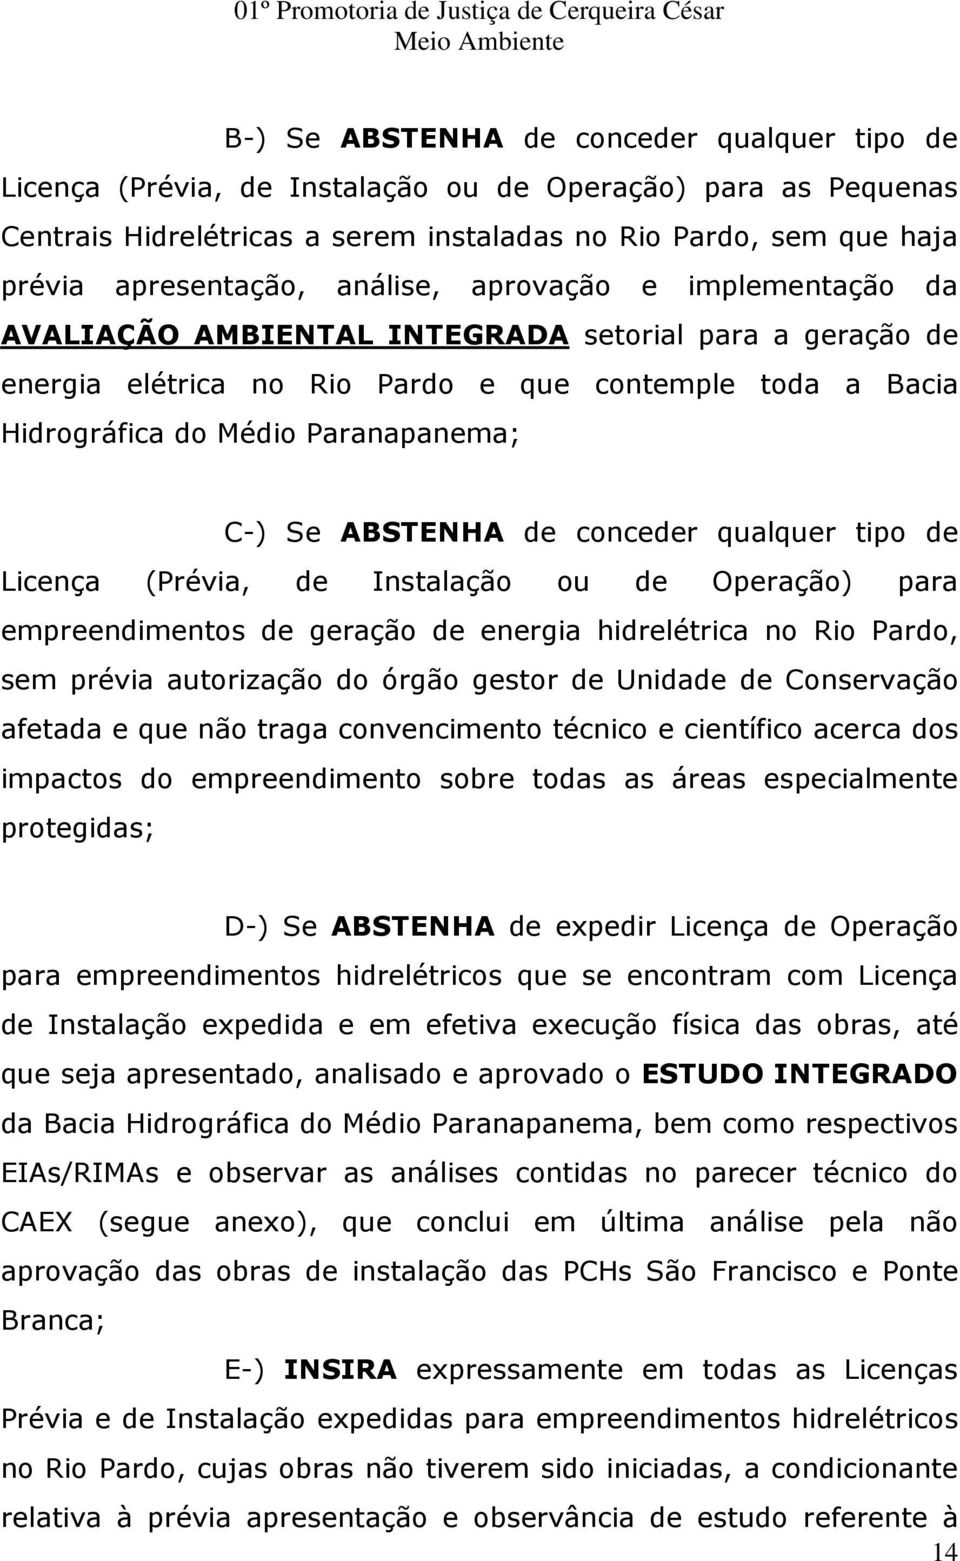 ABSTENHA de conceder qualquer tipo de Licença (Prévia, de Instalação ou de Operação) para empreendimentos de geração de energia hidrelétrica no Rio Pardo, sem prévia autorização do órgão gestor de